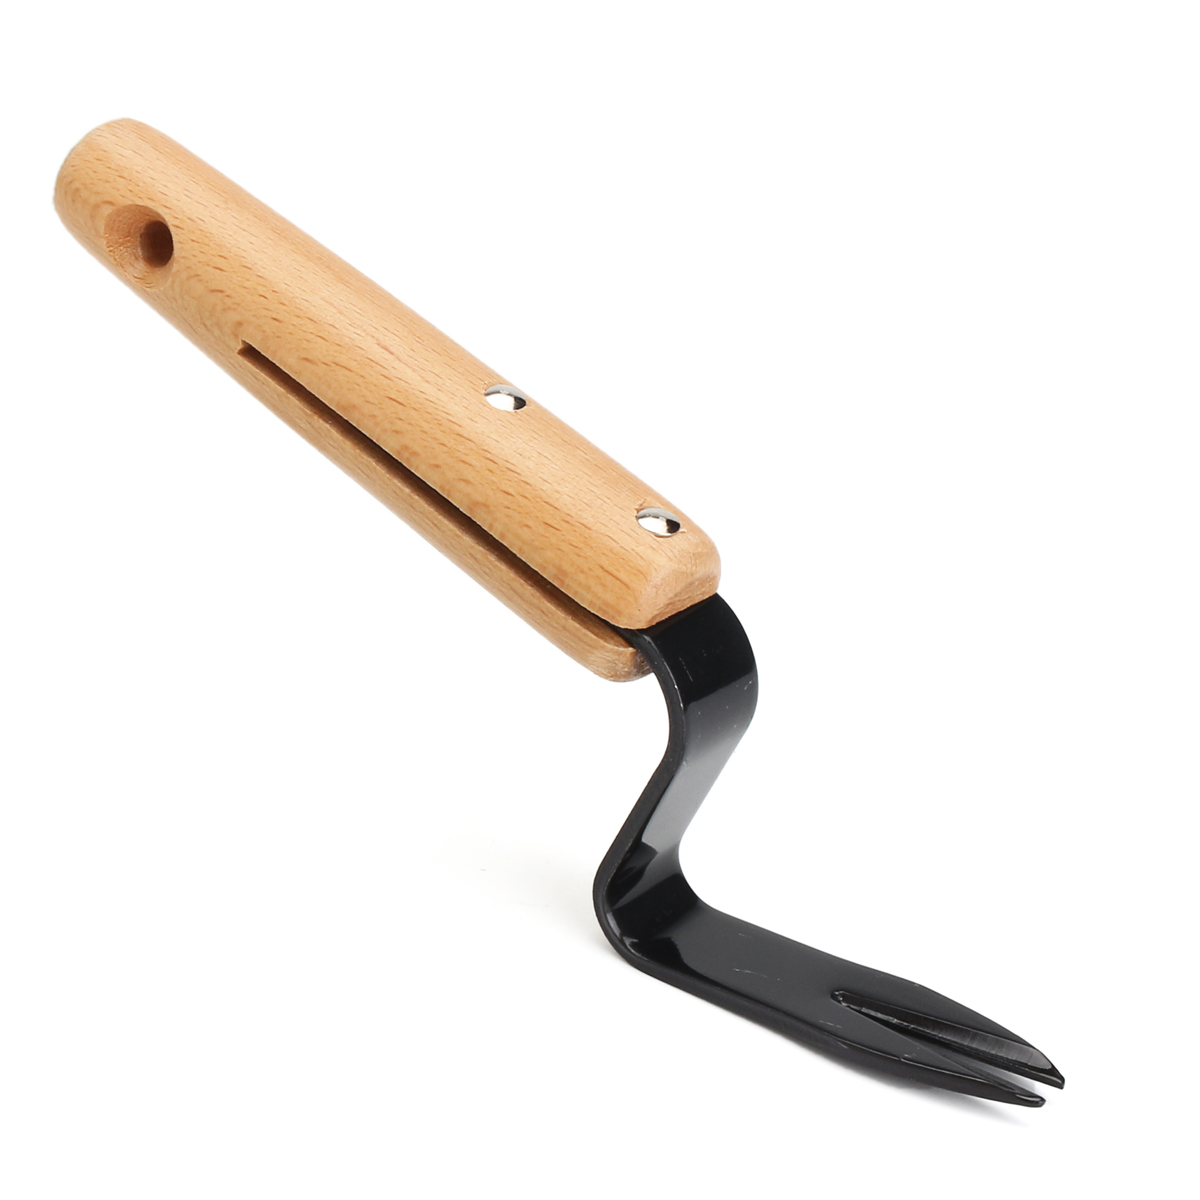 20cm-Forked-Head-Hand-Weeder-Puller-Patio-wood-handle-Garden-Remove-Weeds-1233517-4